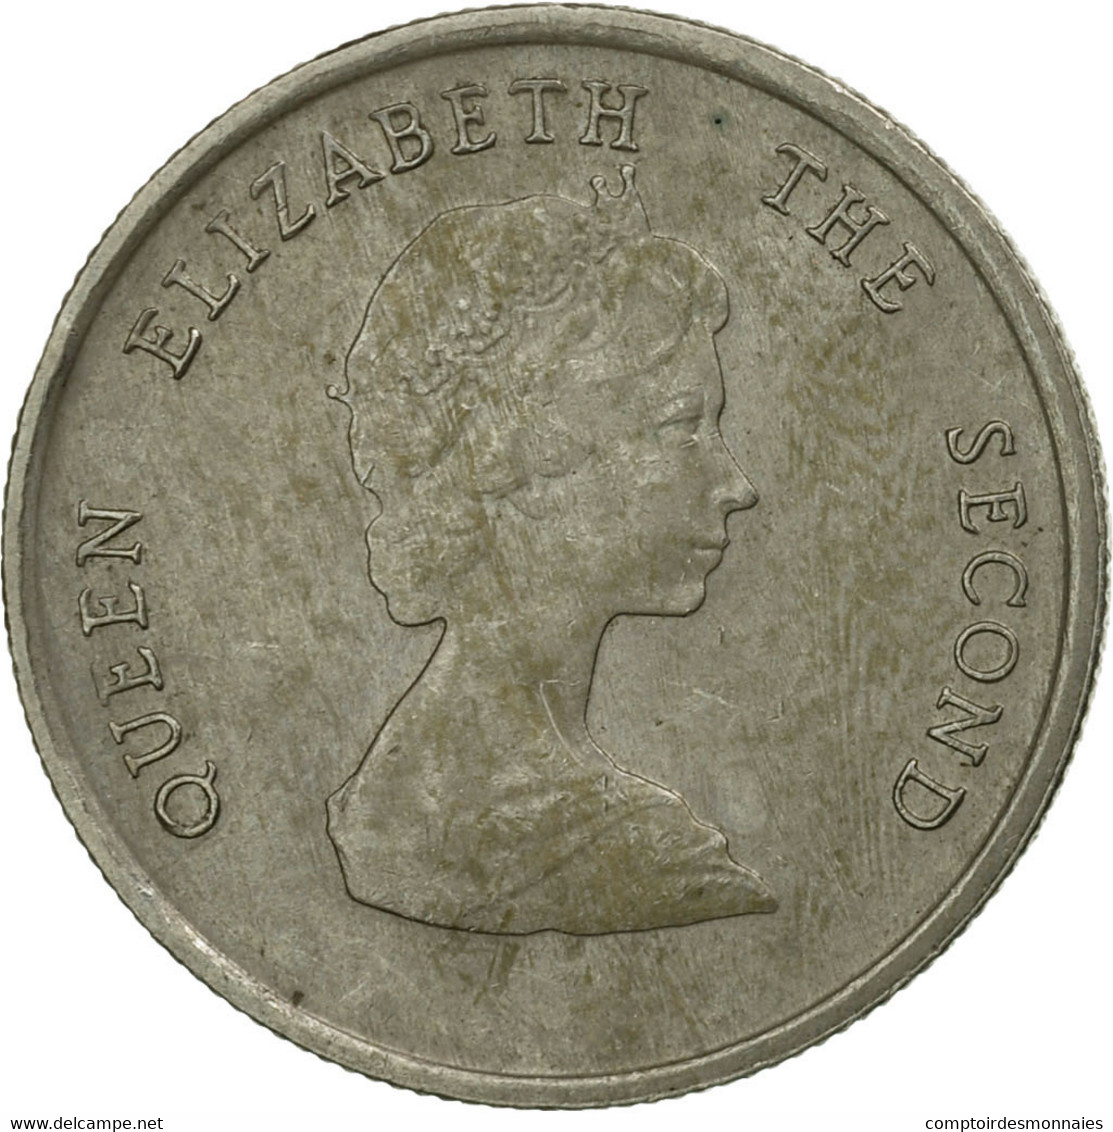 Monnaie, Etats Des Caraibes Orientales, Elizabeth II, 10 Cents, 1986, TTB - Caraïbes Orientales (Etats Des)